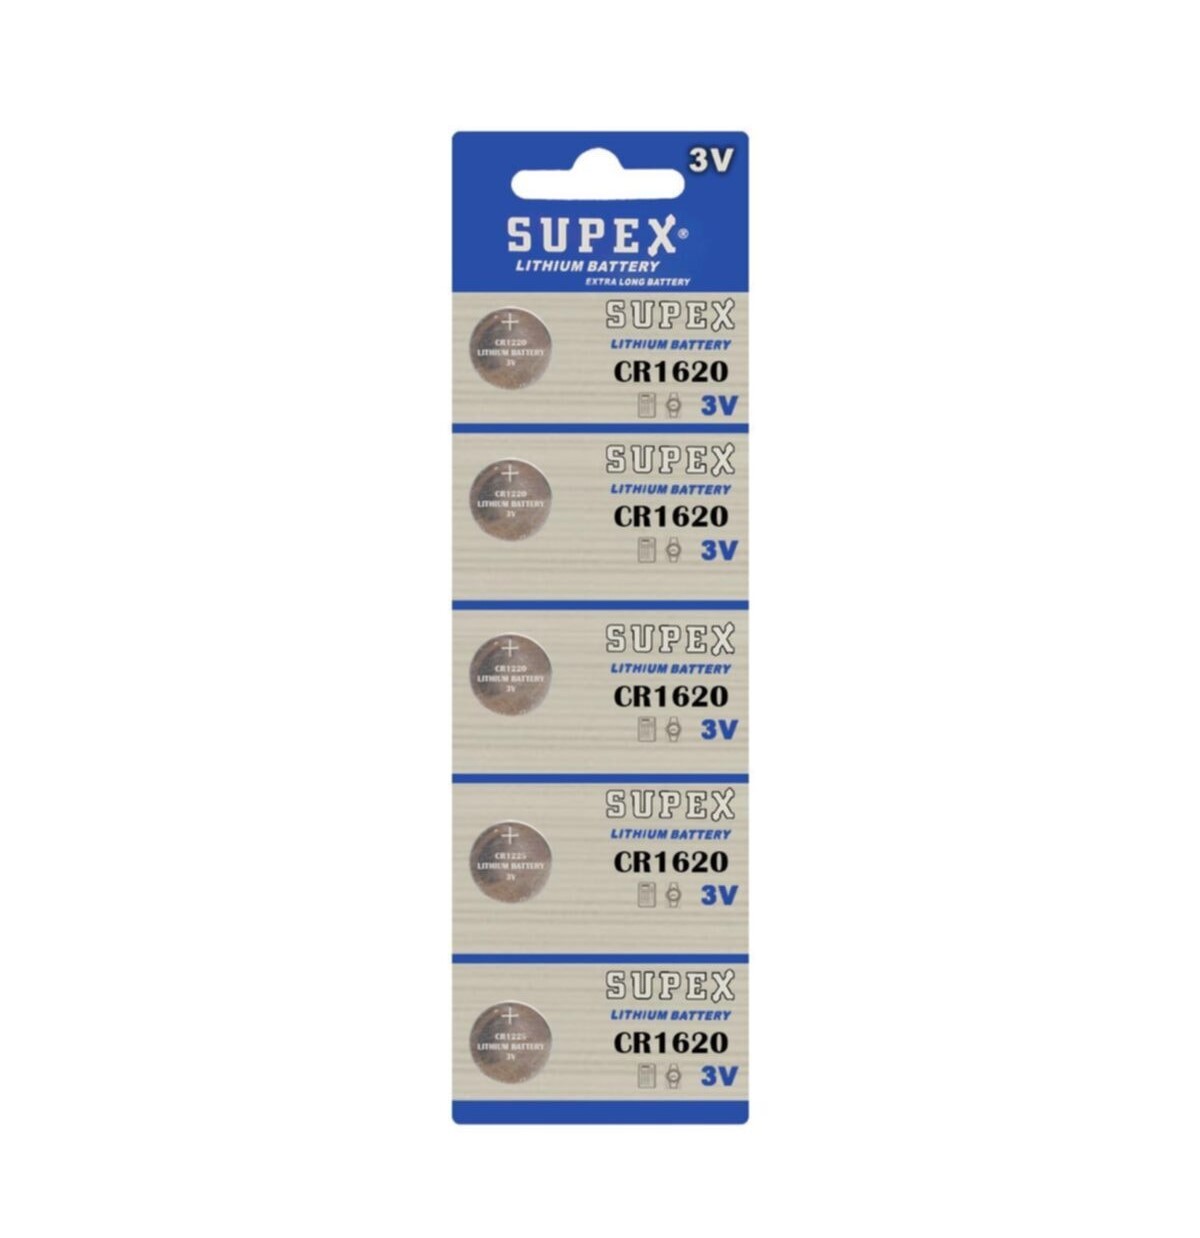 Supex Extra Long Battery CR1620 3V Lityum Düğme Pil 5'li